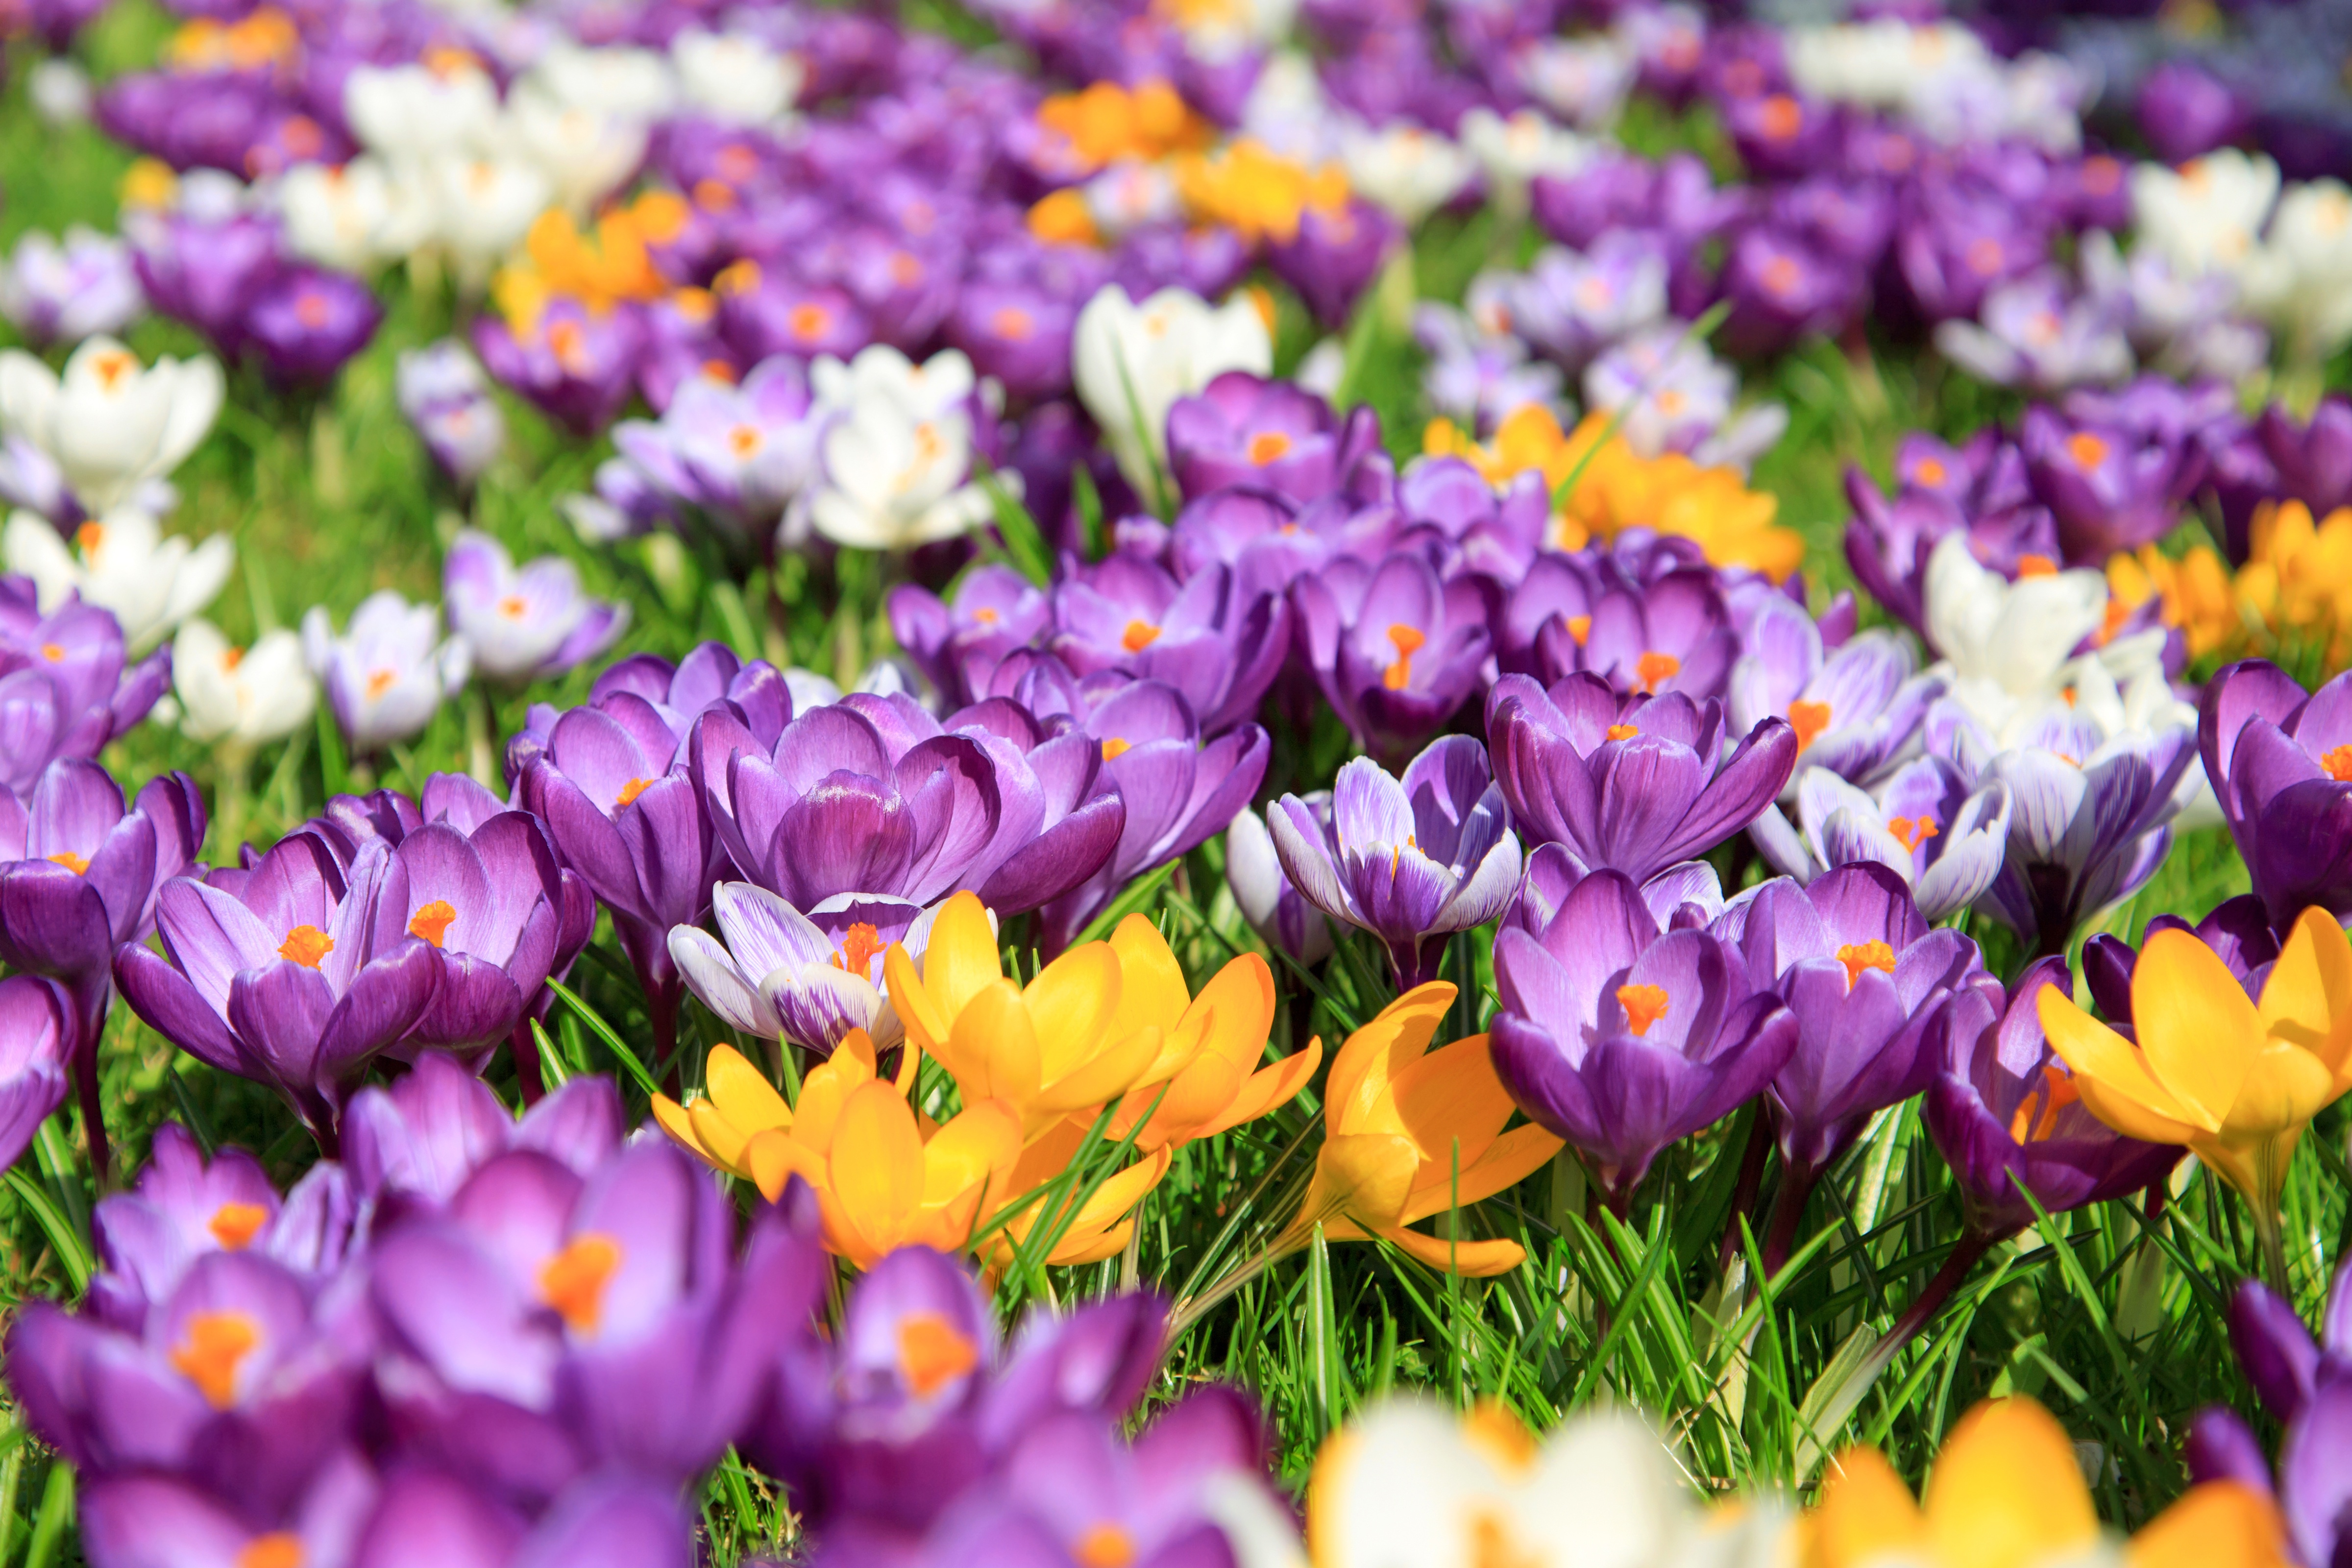 Картинки на заставку весенние цветы. Крокус весенний желтый. Крокус Баррз Пурпл. Крокус весенний фиолетовый. Весенние цветы крокусы.